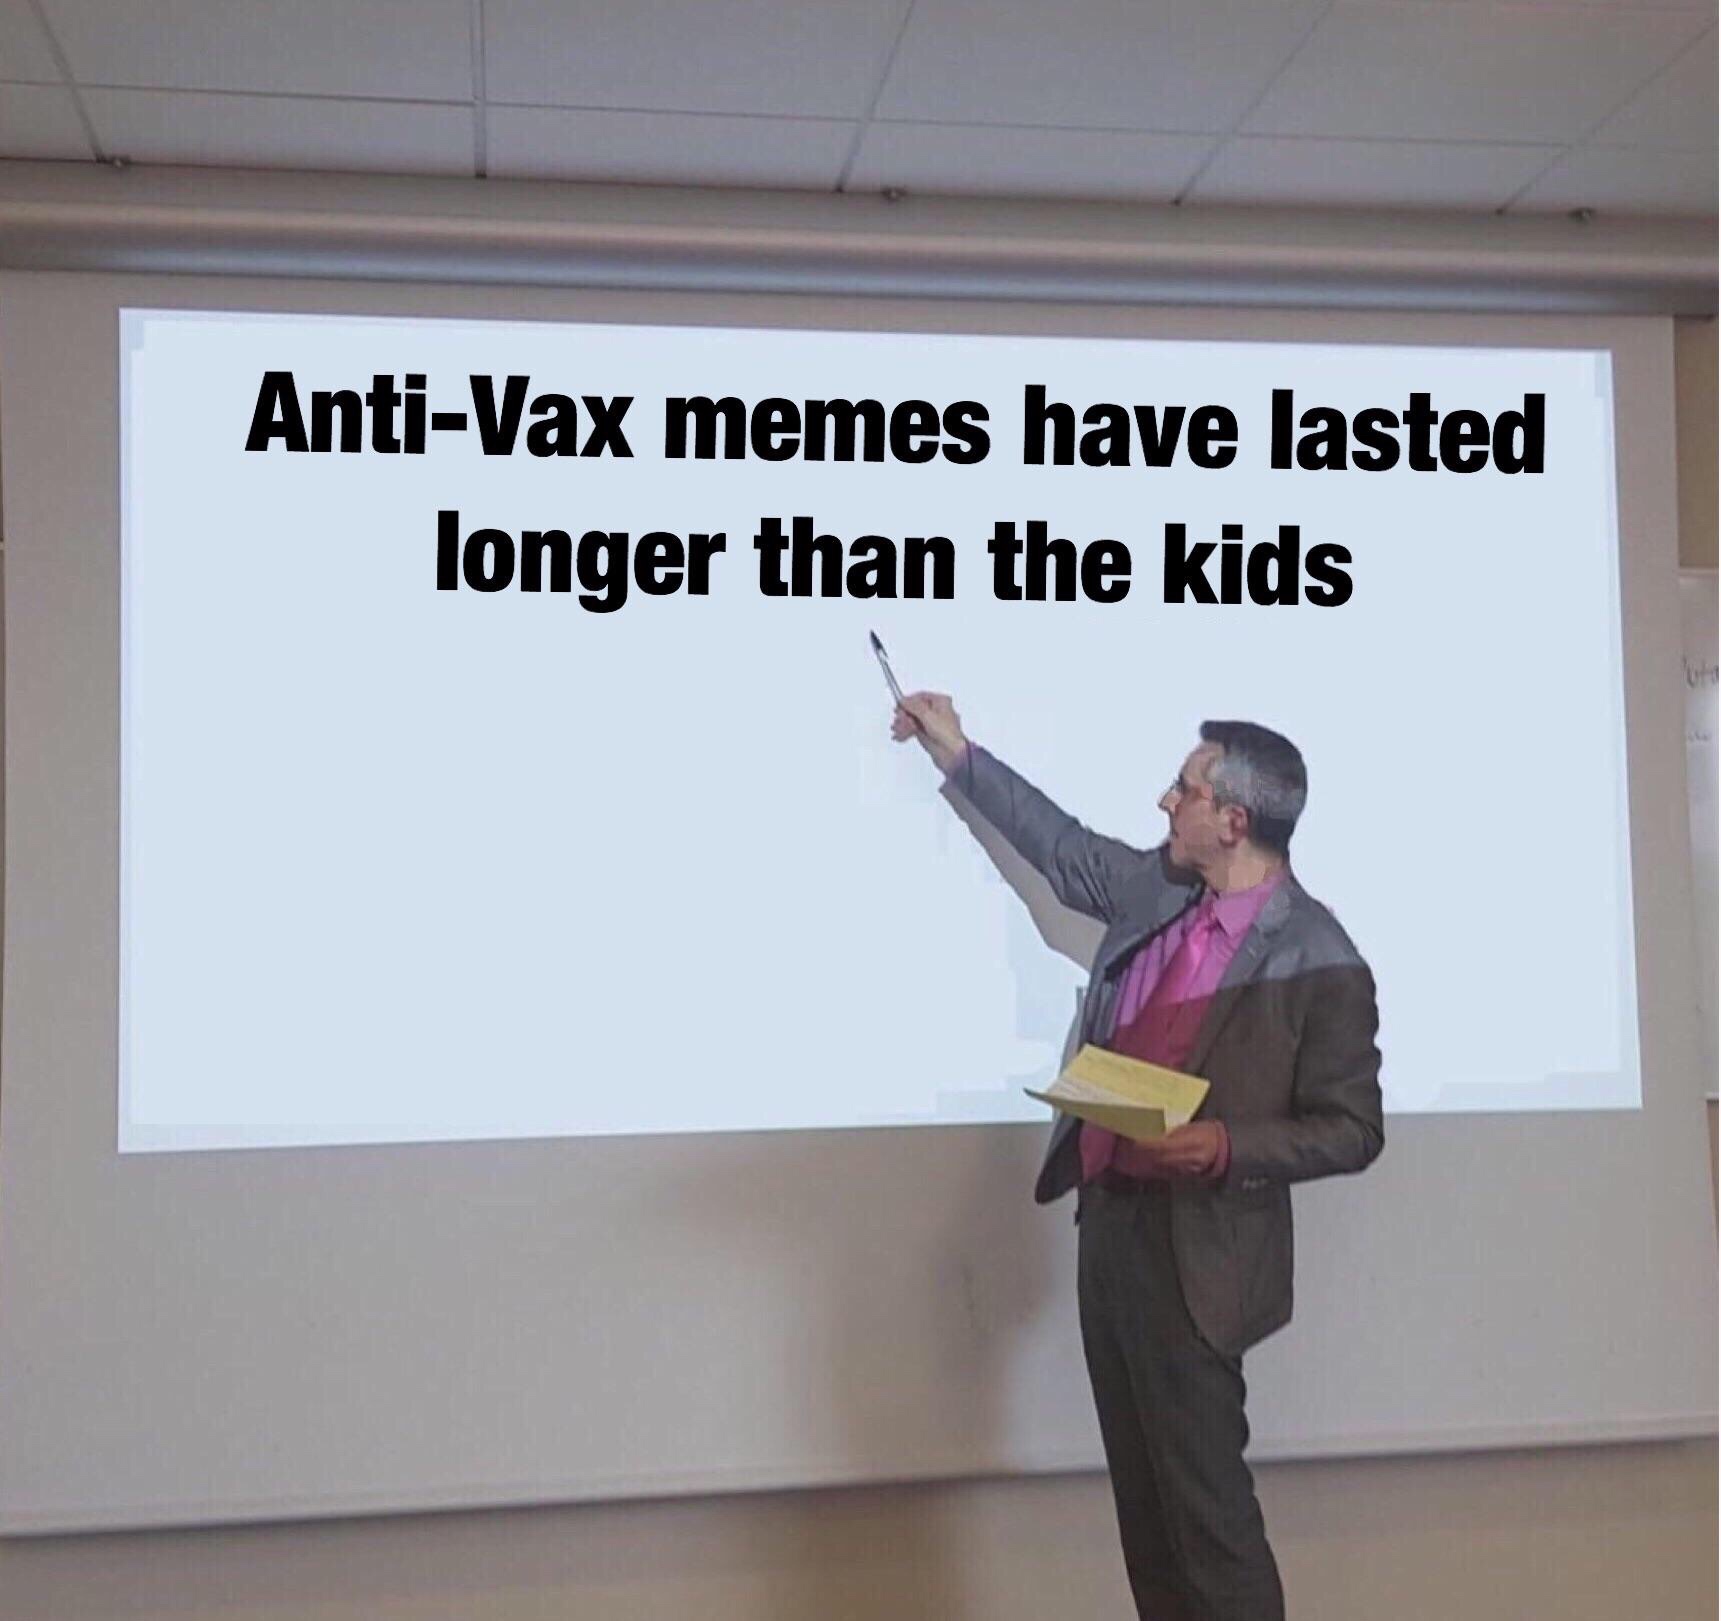 memes - anti vax memes last longer than the kids - AntiVax memes have lasted longer than the kids